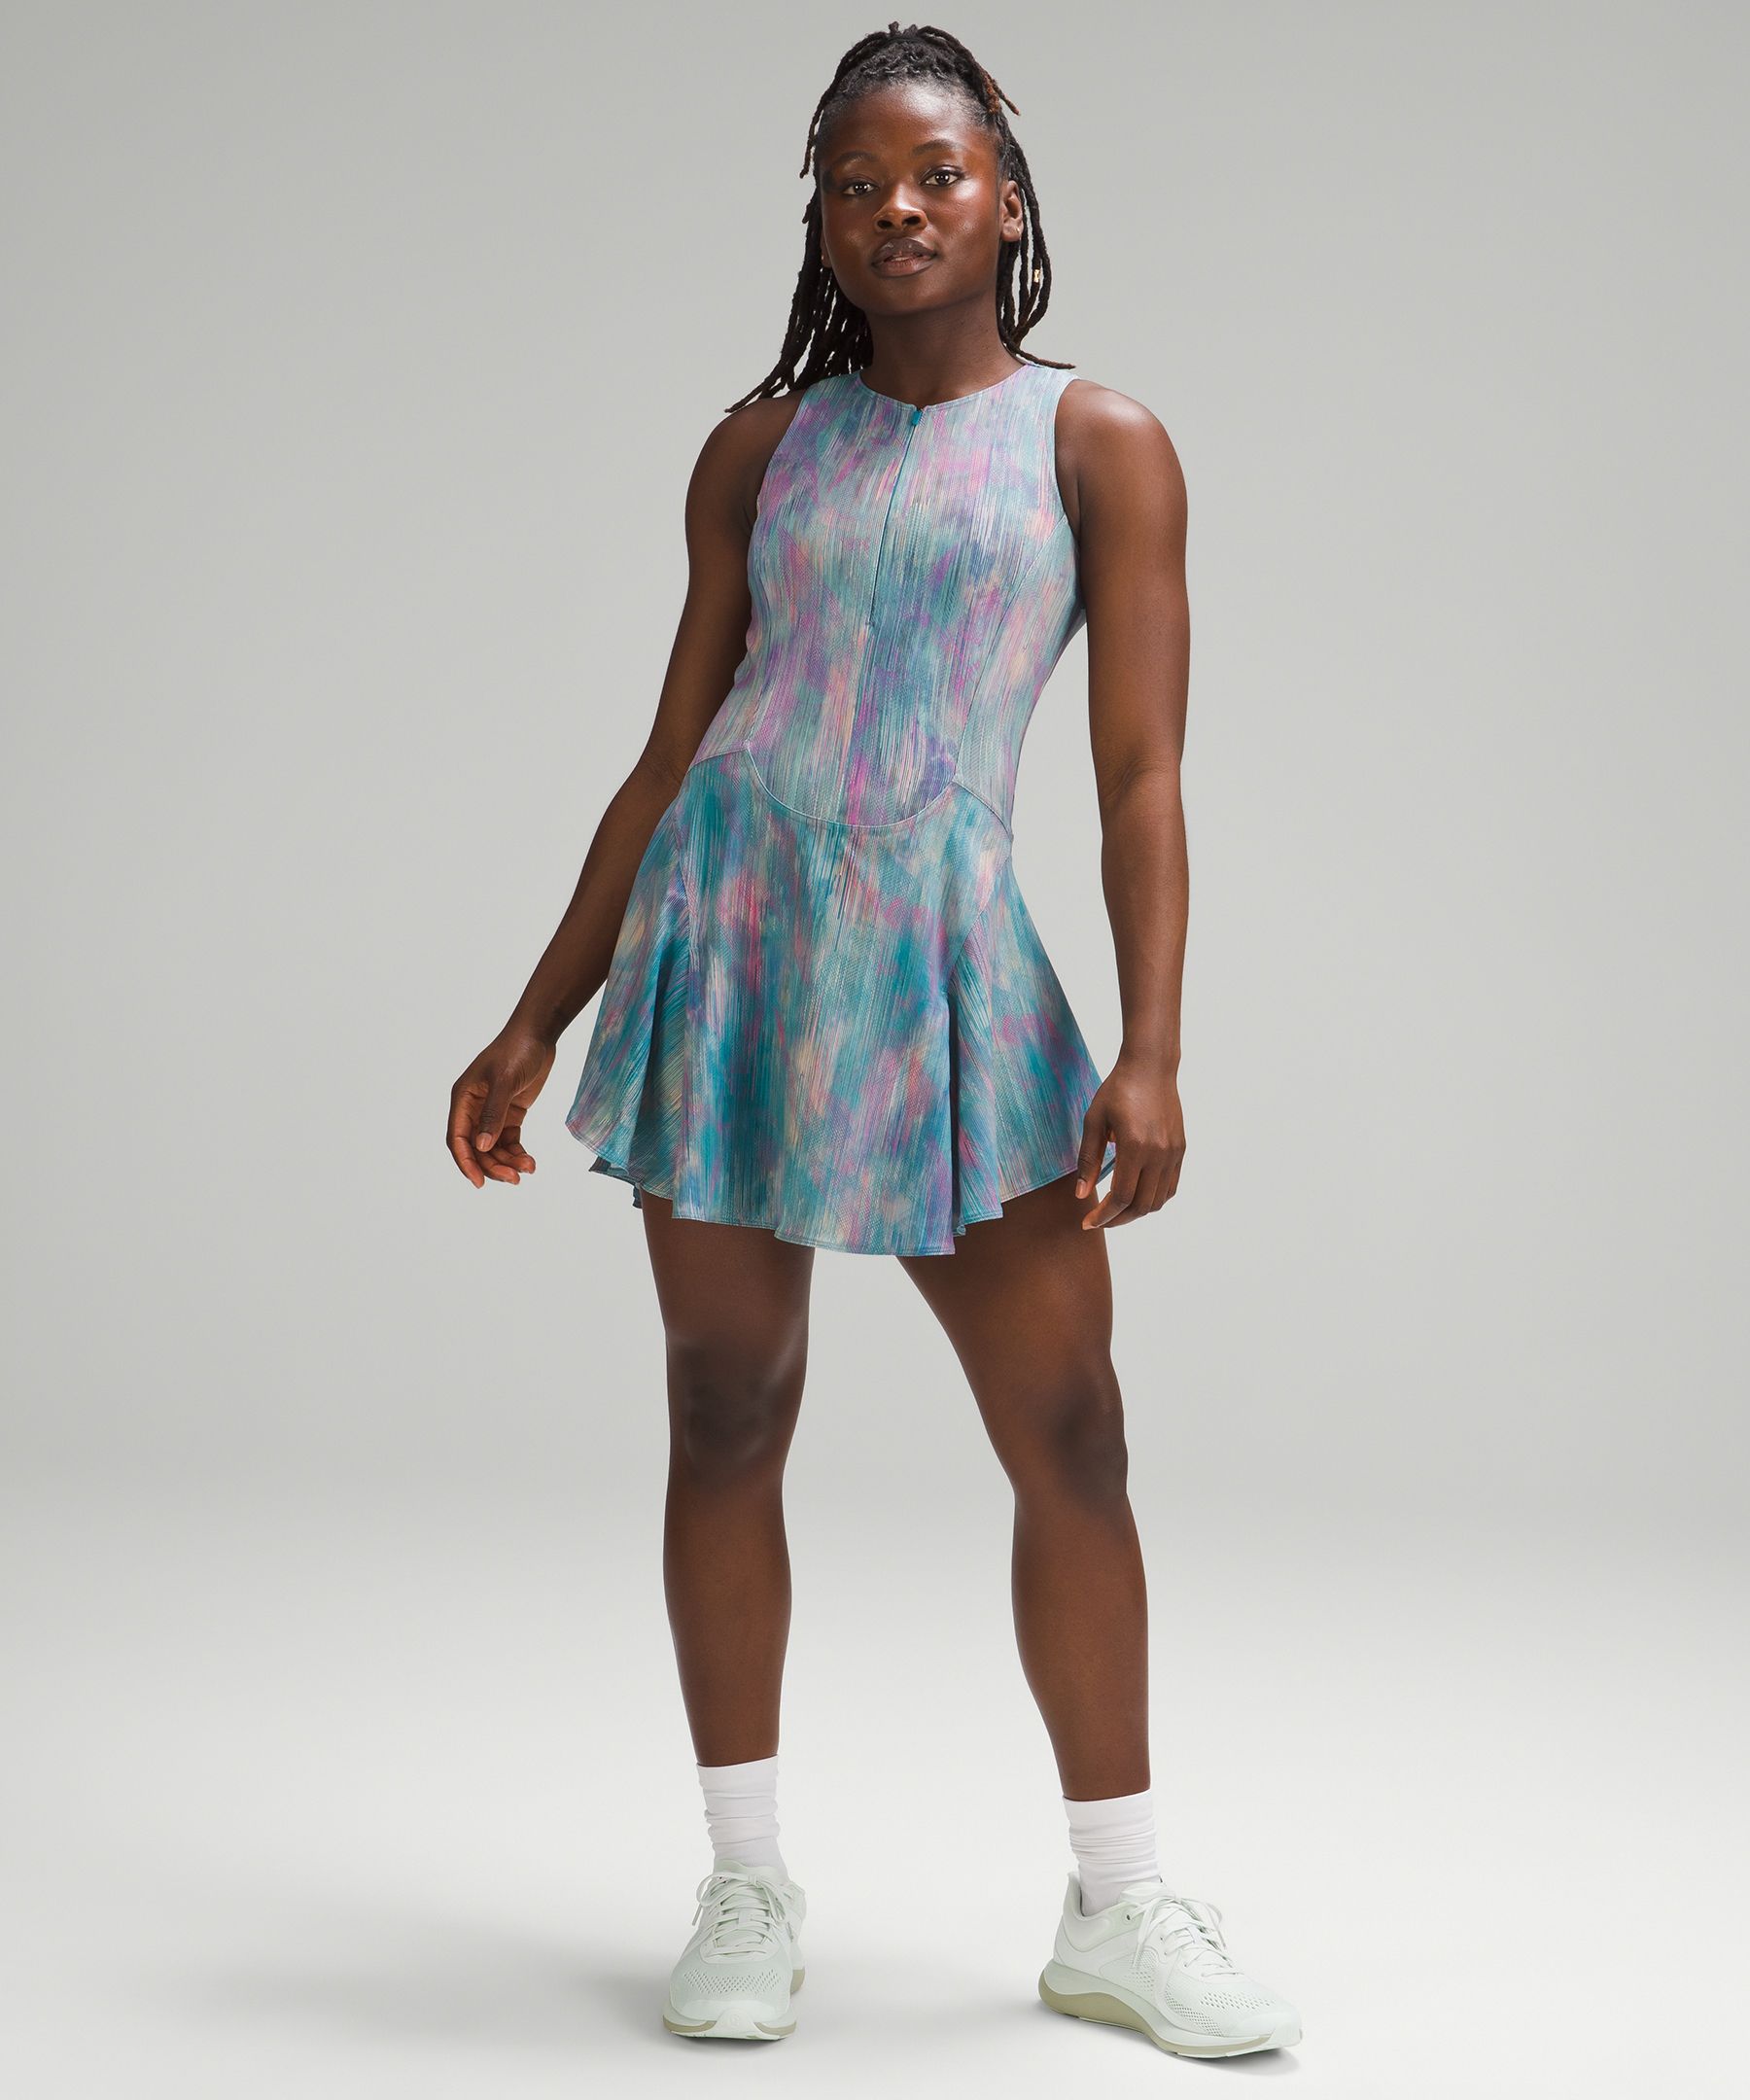 Lululemon Everlux Short-lined Tennis Tank Dress 6"